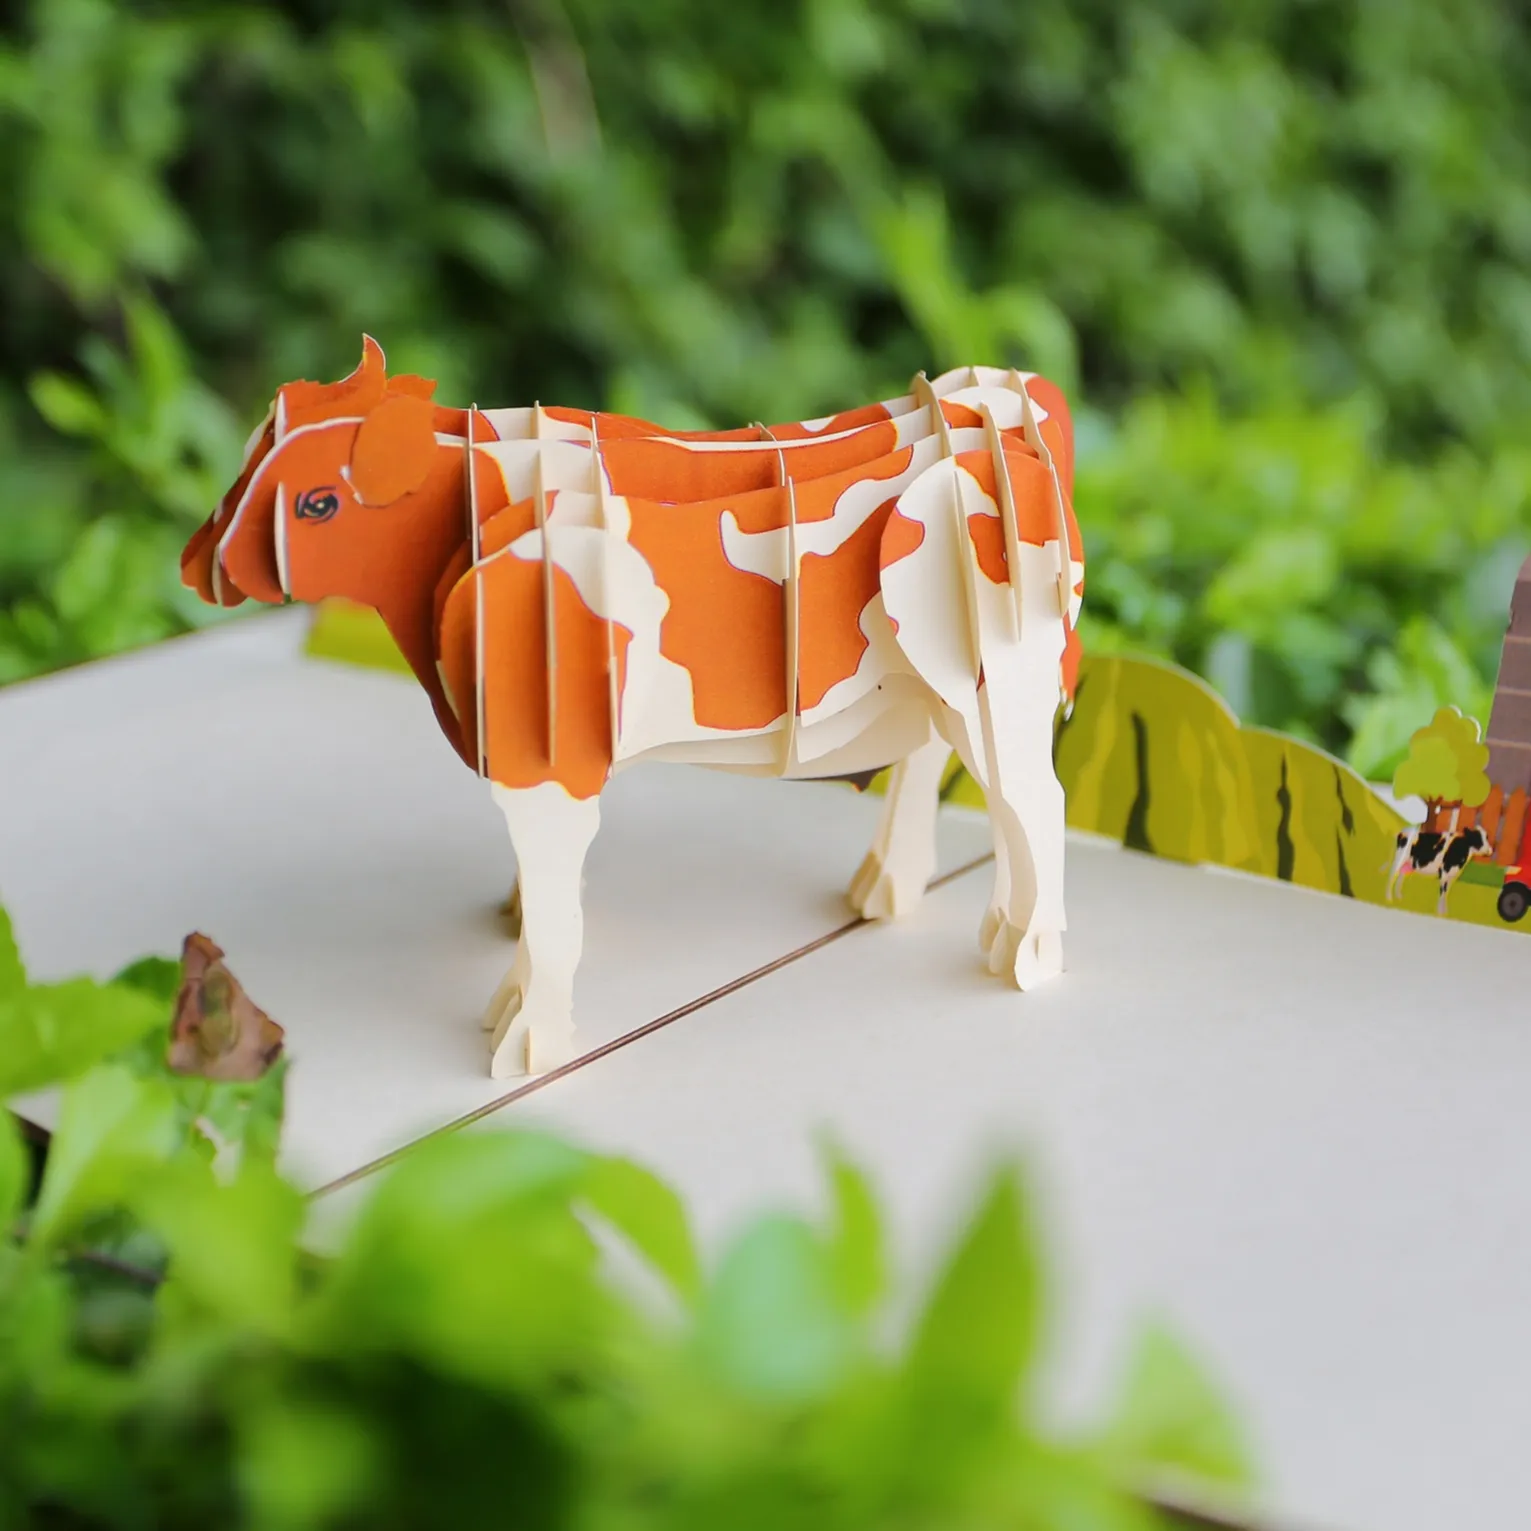 การ์ดพิมพ์3D ลายวัวน่ารักป็อปอัพการ์ดอวยพรสำหรับทุกโอกาสโดยผู้ผลิตหัตถกรรมจากเวียดนาม